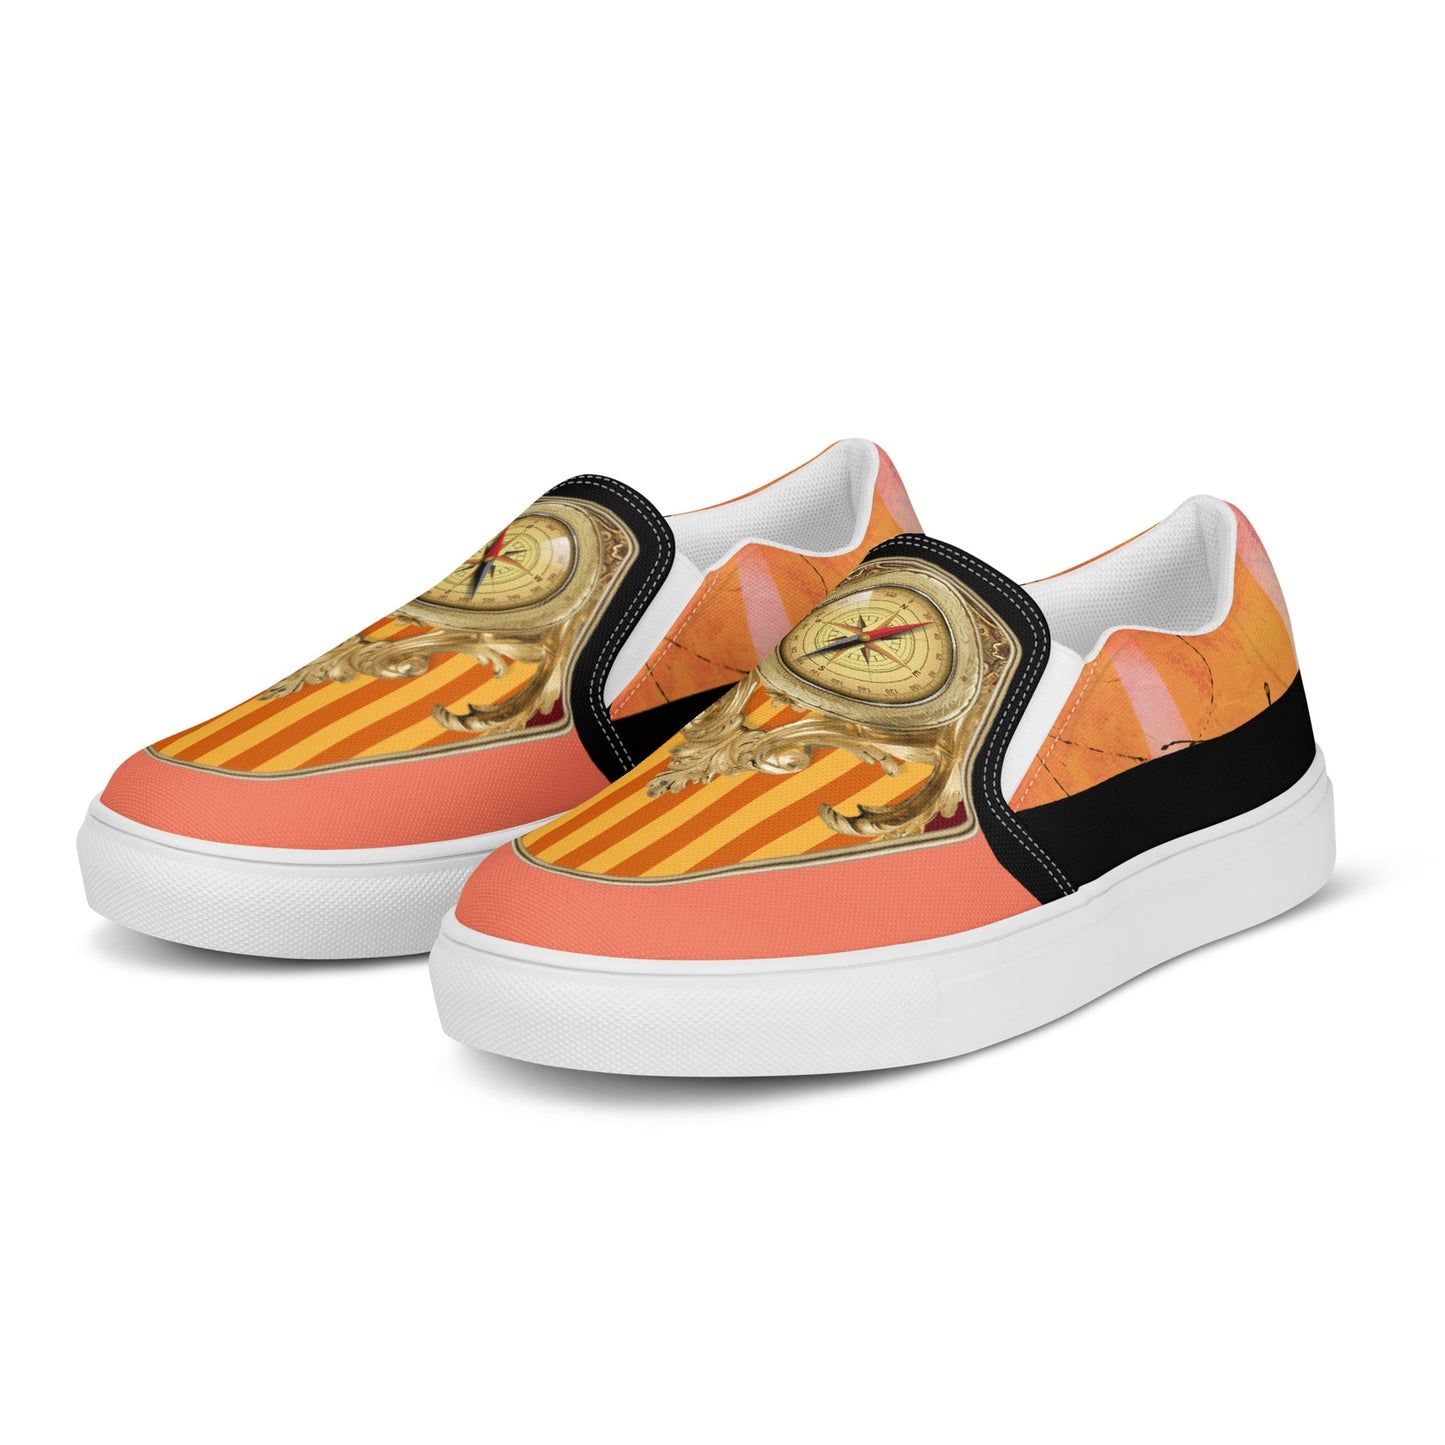 klasneakers Men’s slip-on canvas shoes - Gold Compass